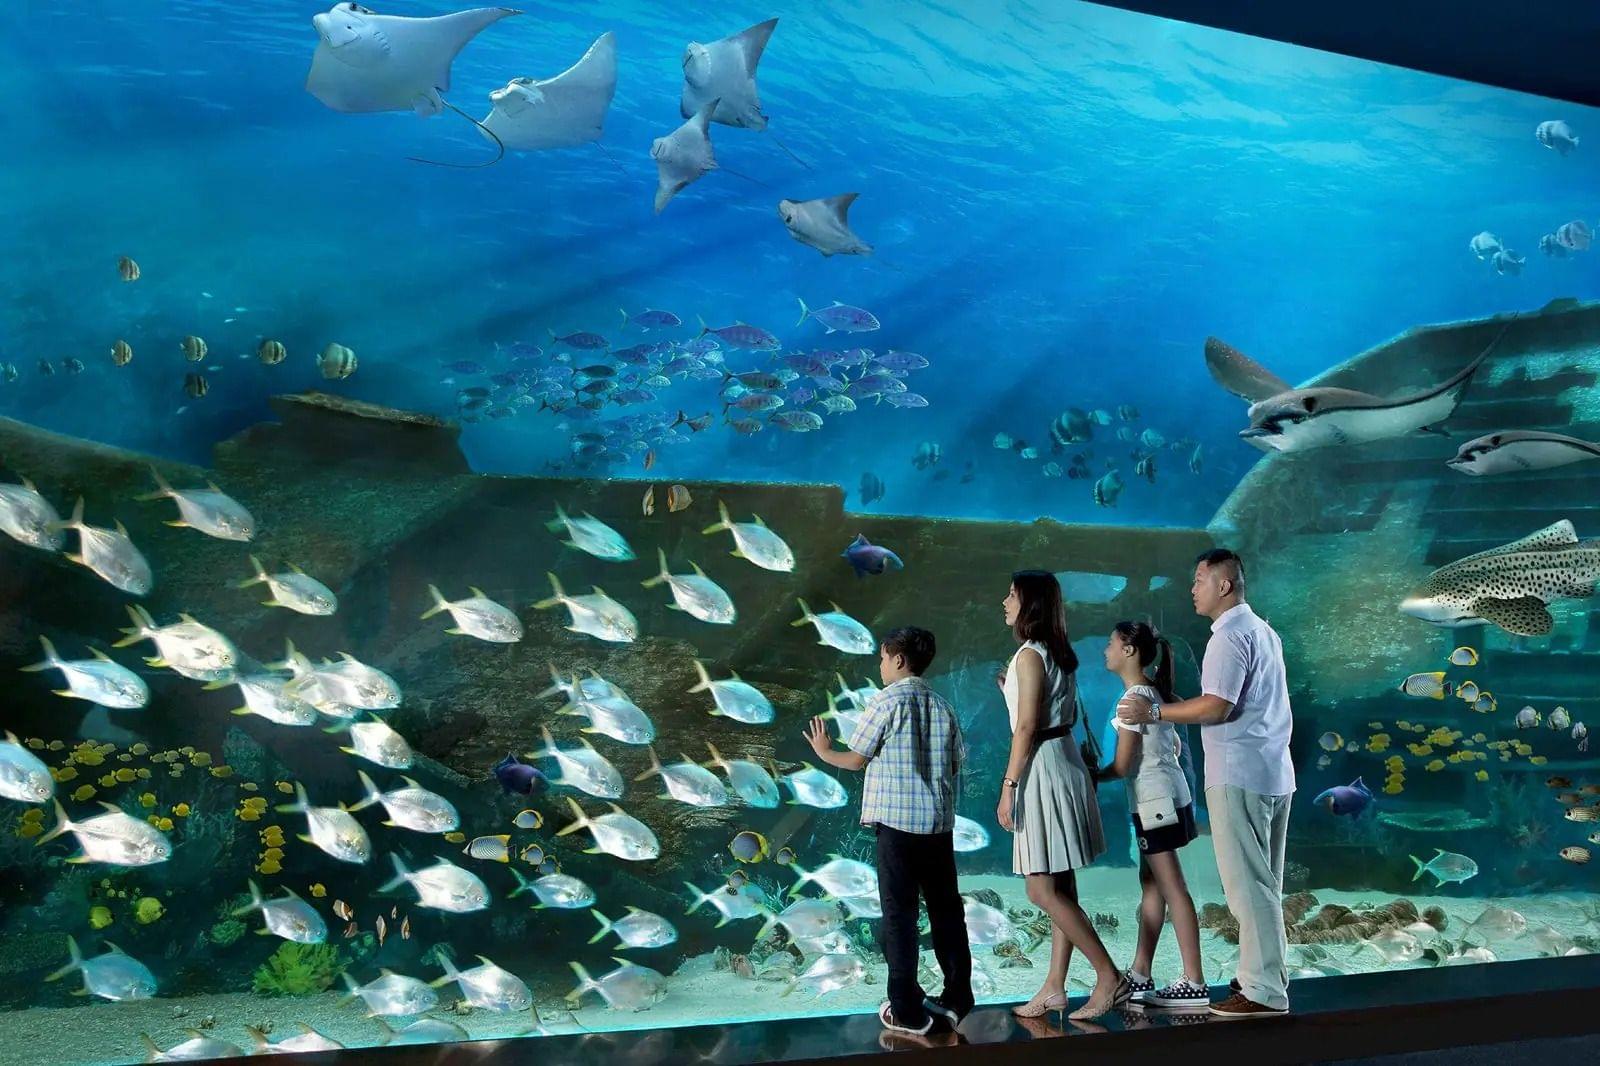 Explore the underwater realms of S.E.A Aquarium